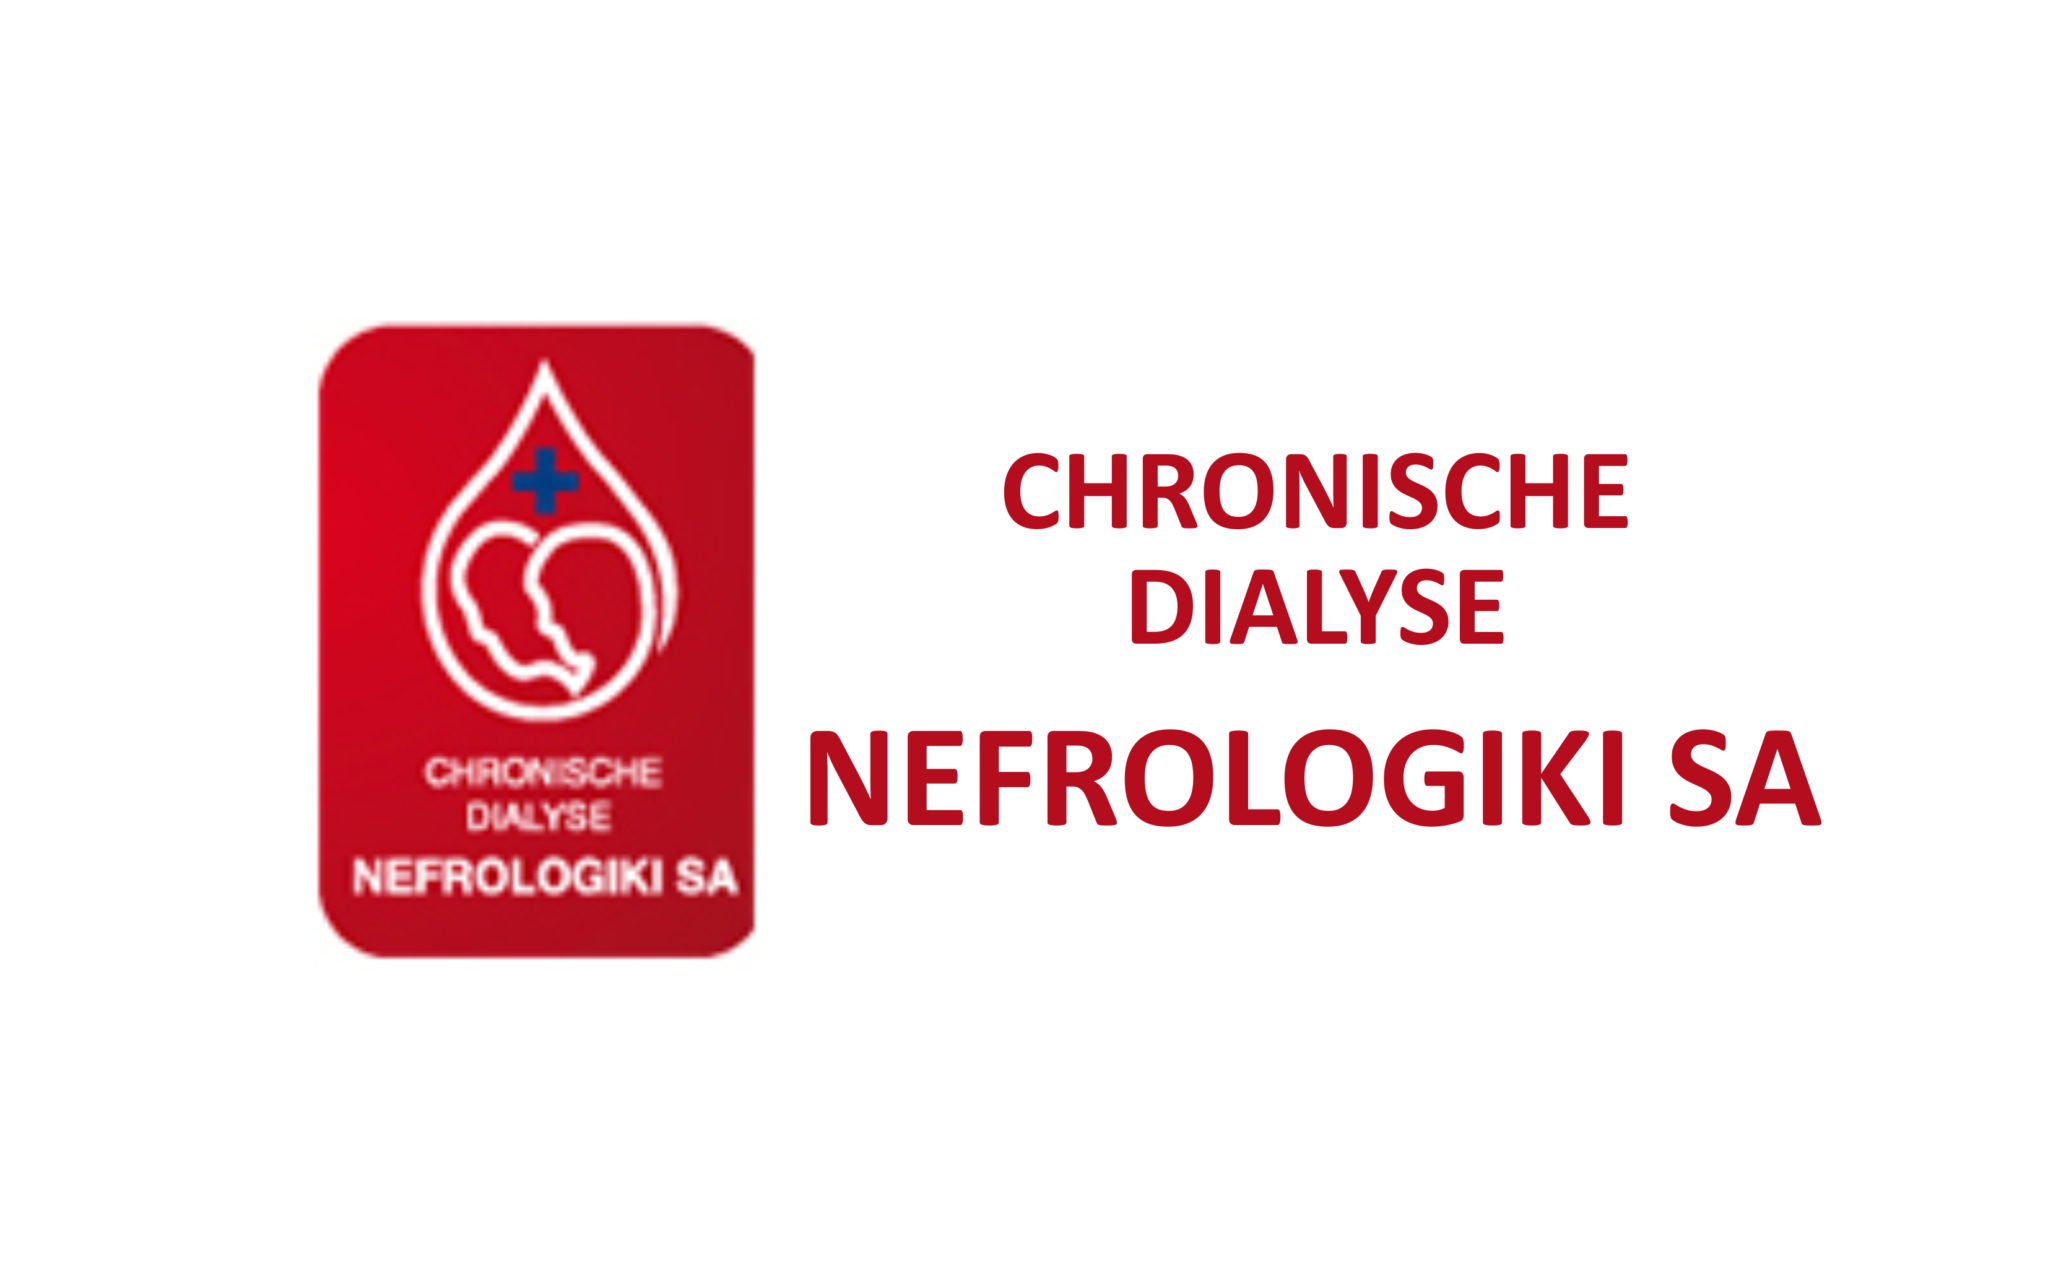 Nefrologiki-logo